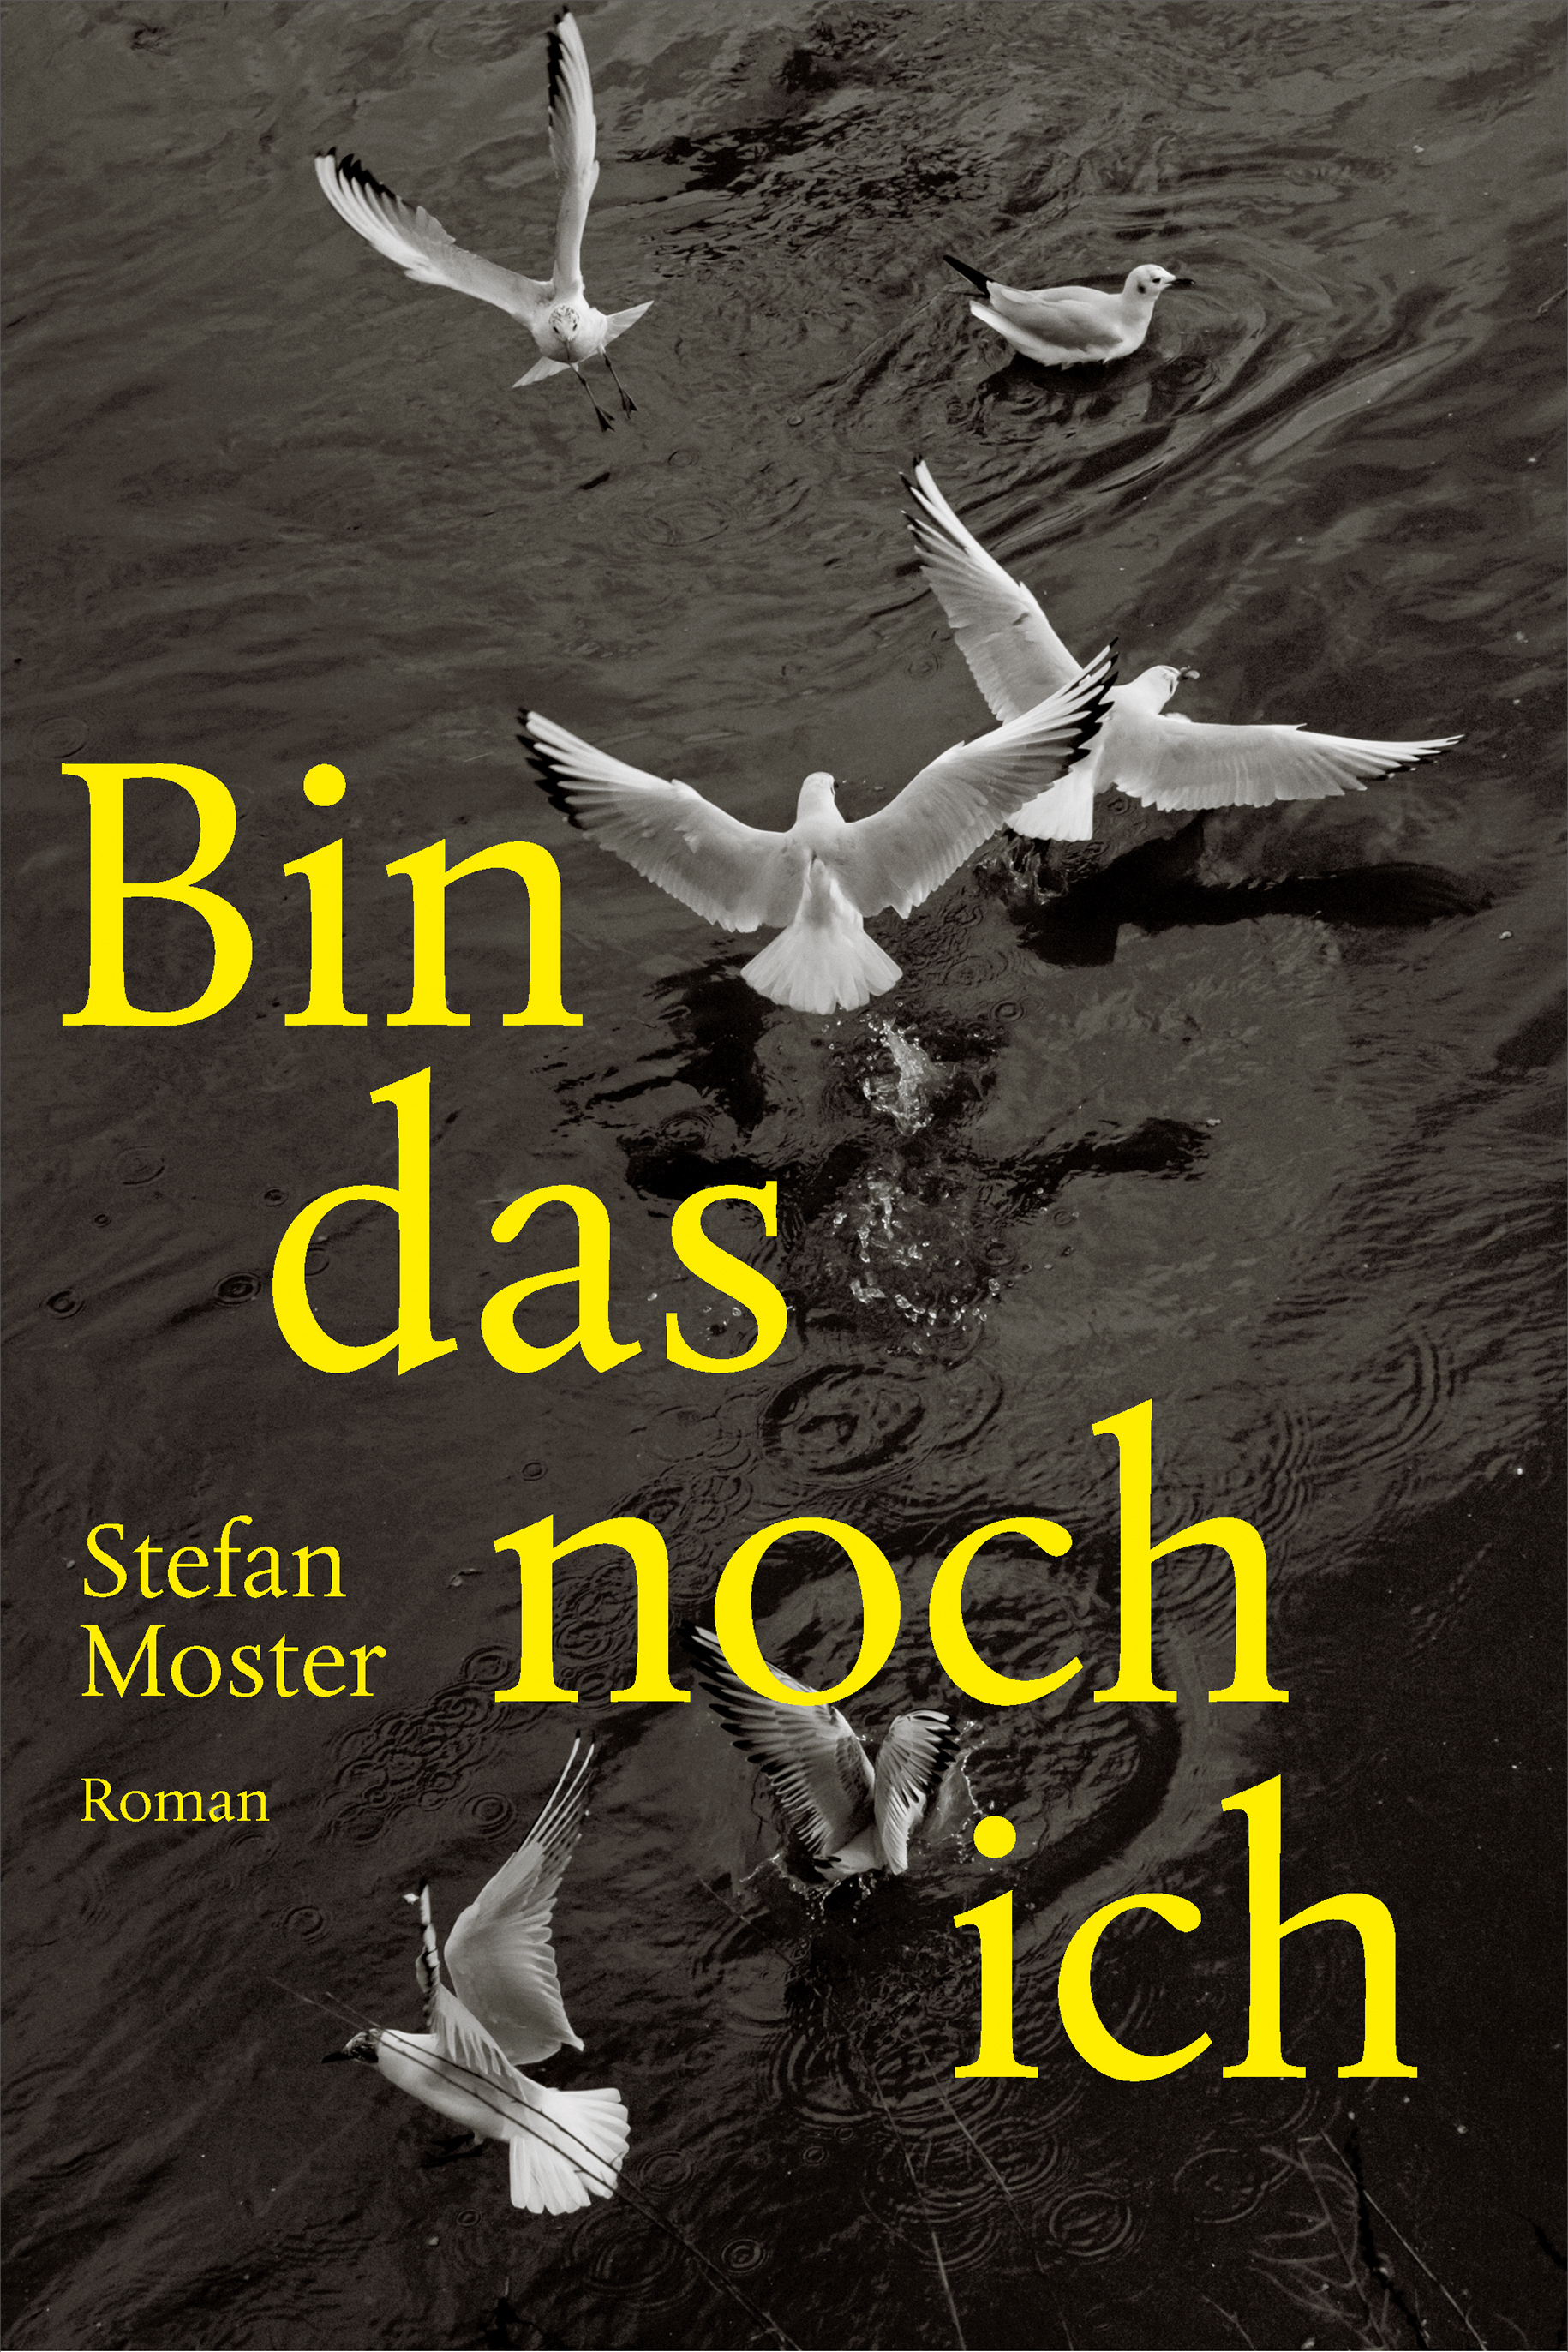 Bin das noch ich, Stefan Moster, Roman, Literatur, mare Verlag